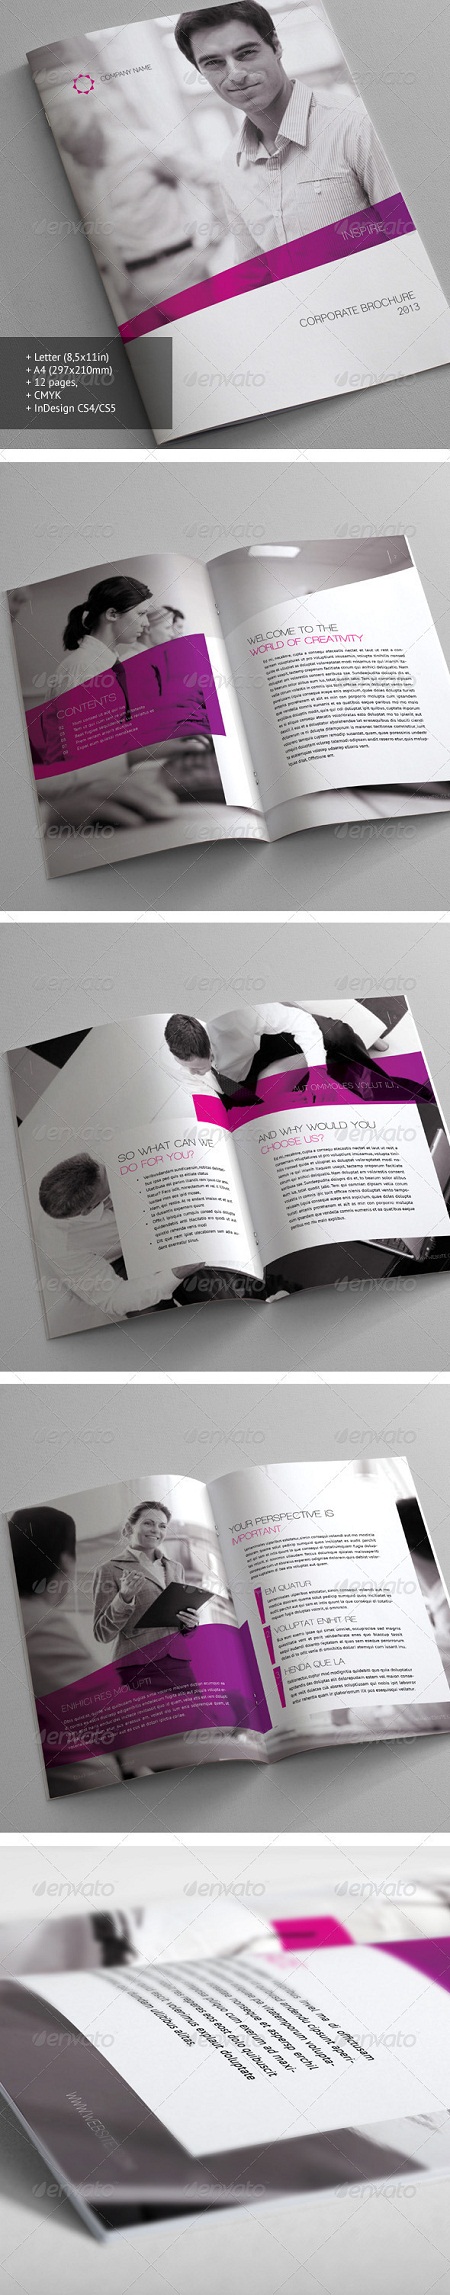 GraphicRiver - Corporate Brochure 21